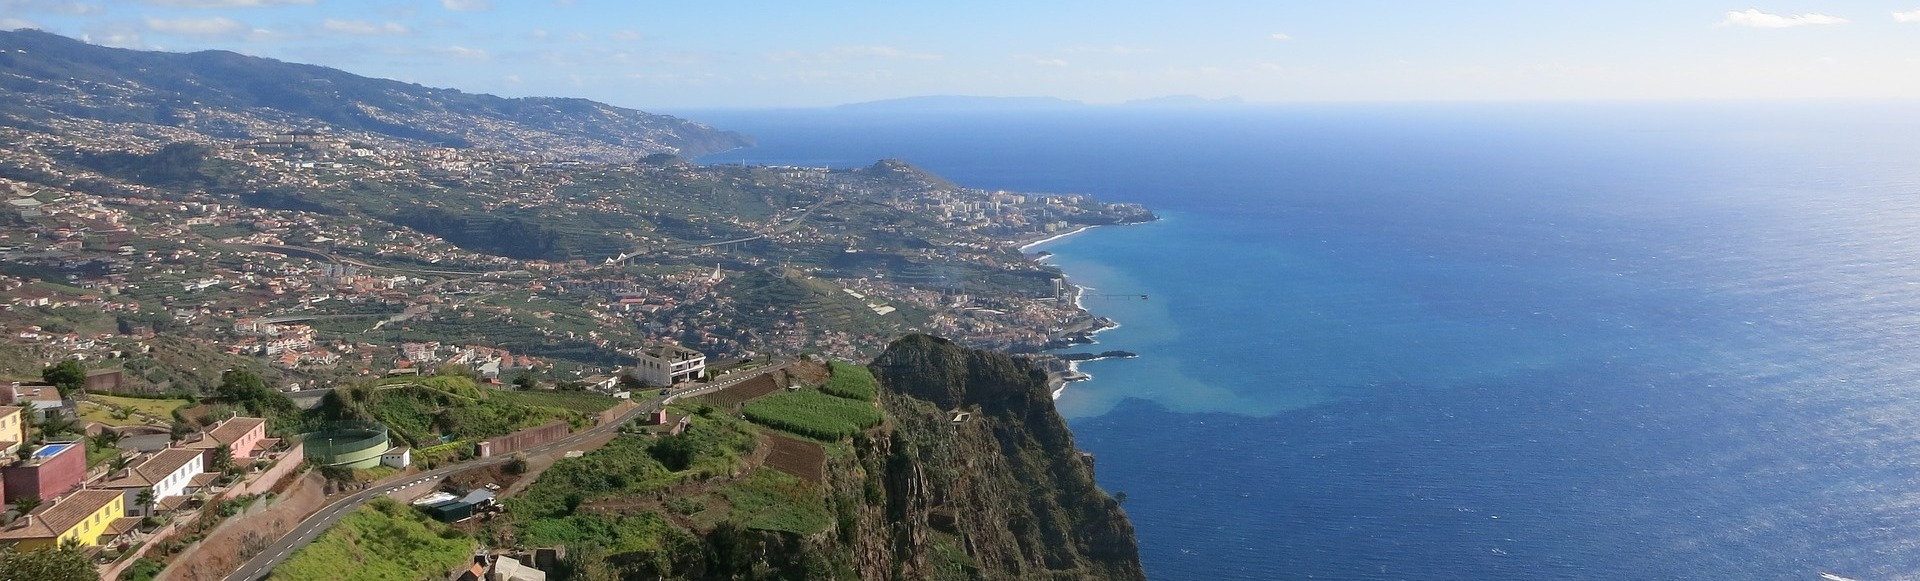 Circuit Madeira - Insula eternei primaveri